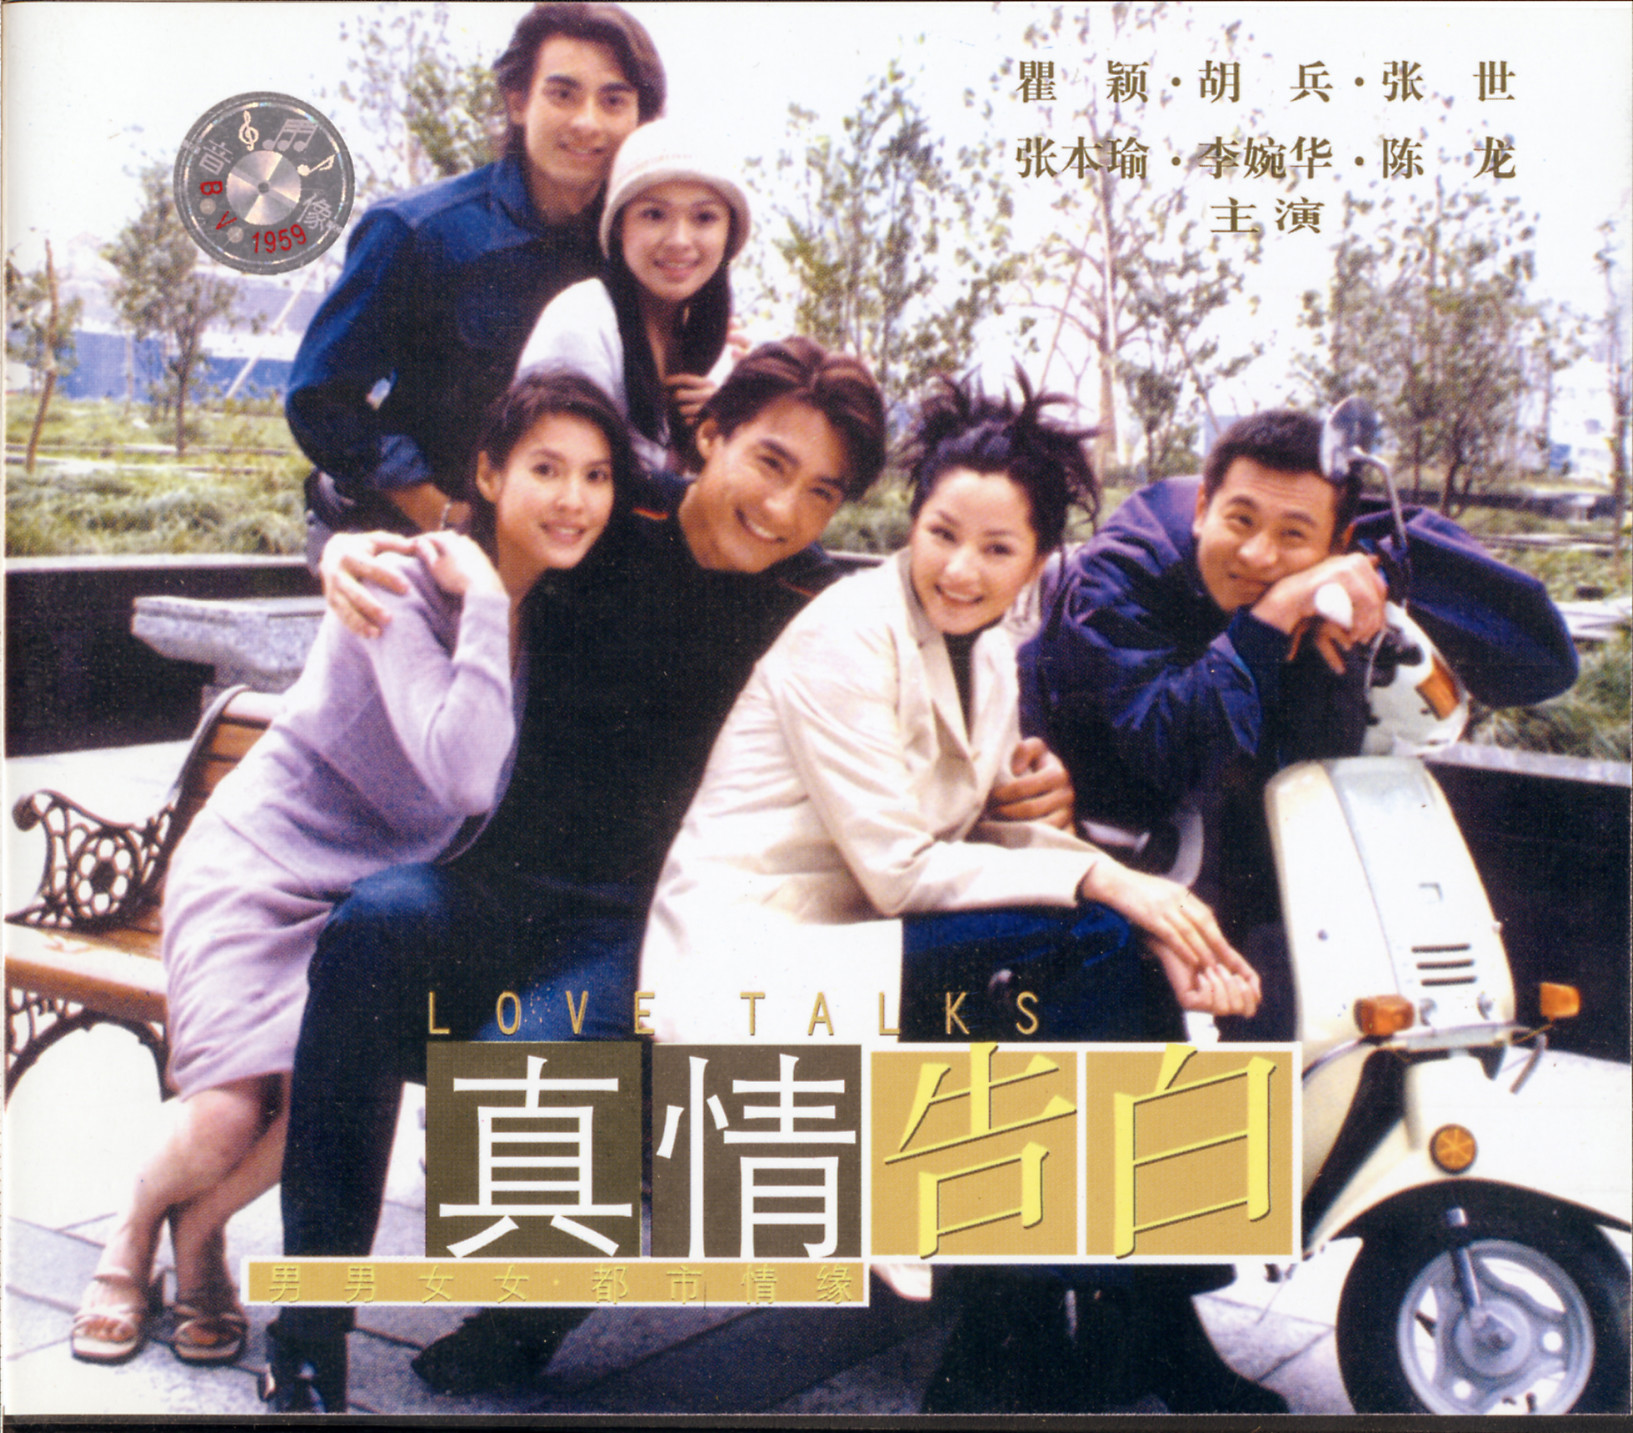 1999年,胡兵和瞿颖主演的电视剧《真情告白》在全国热播,这部剧让他